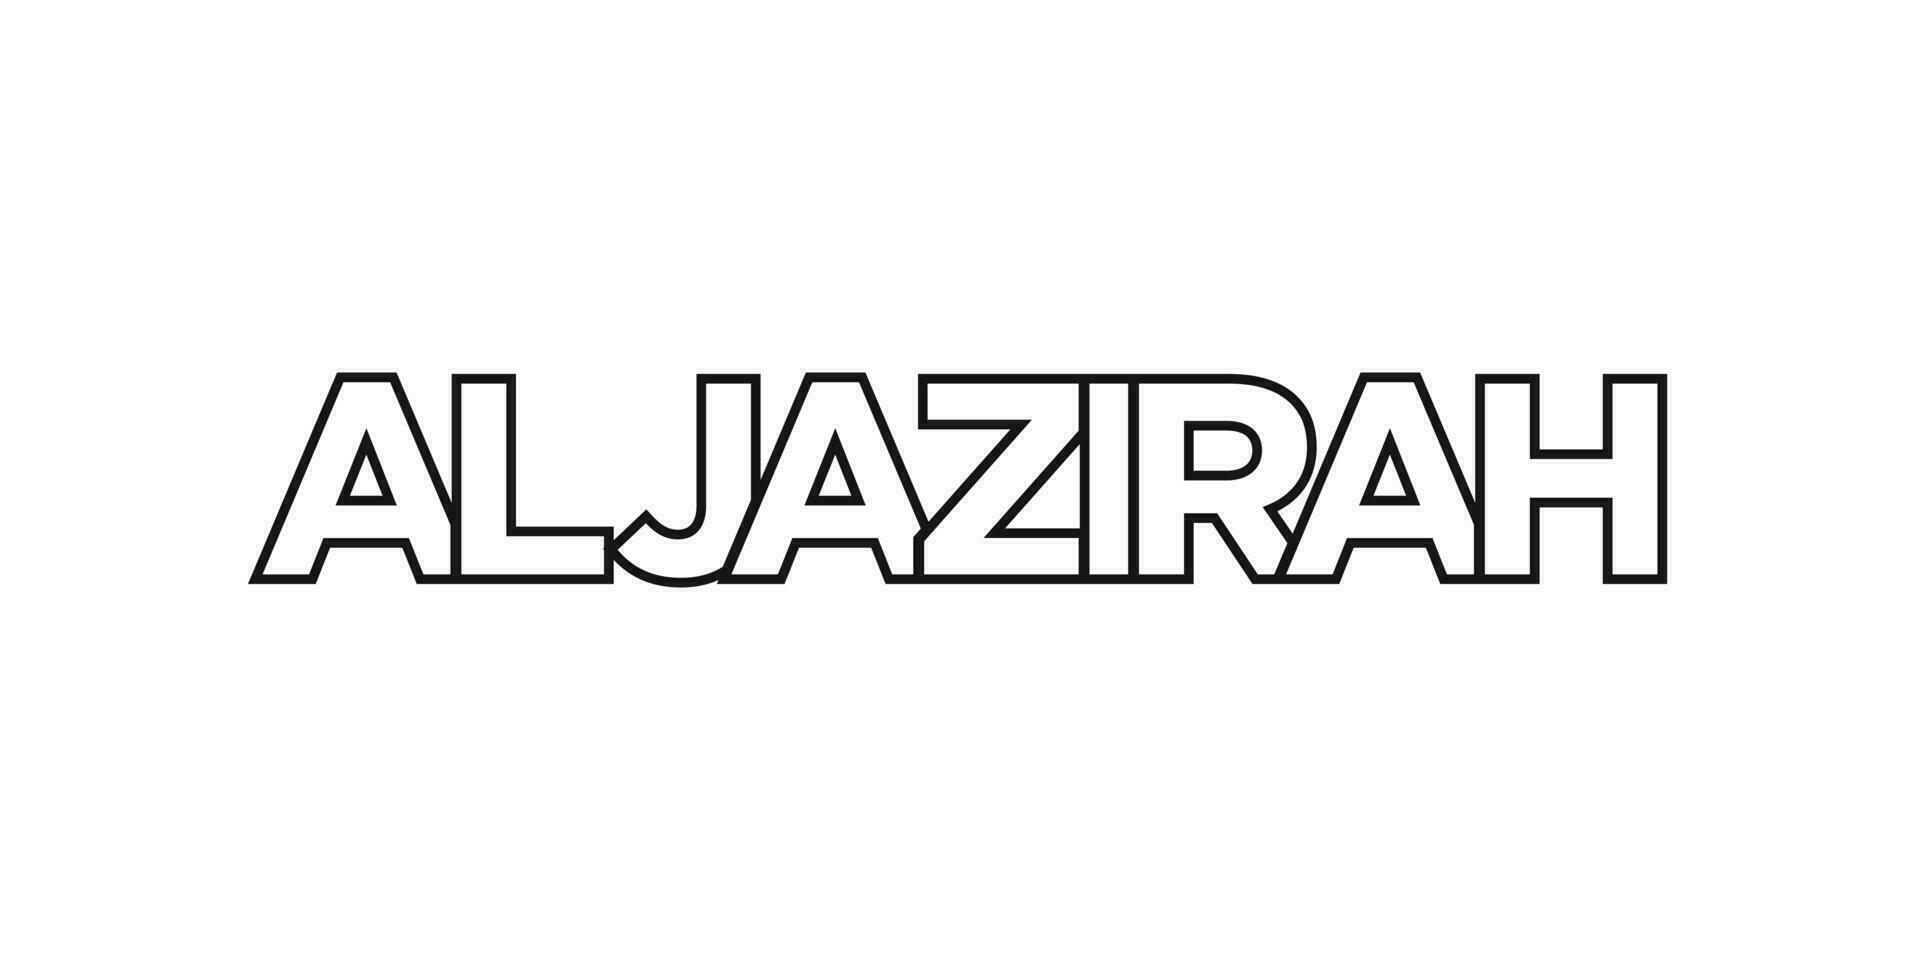 Al jazira dans le Soudan emblème. le conception Caractéristiques une géométrique style, vecteur illustration avec audacieux typographie dans une moderne Police de caractère. le graphique slogan caractères.